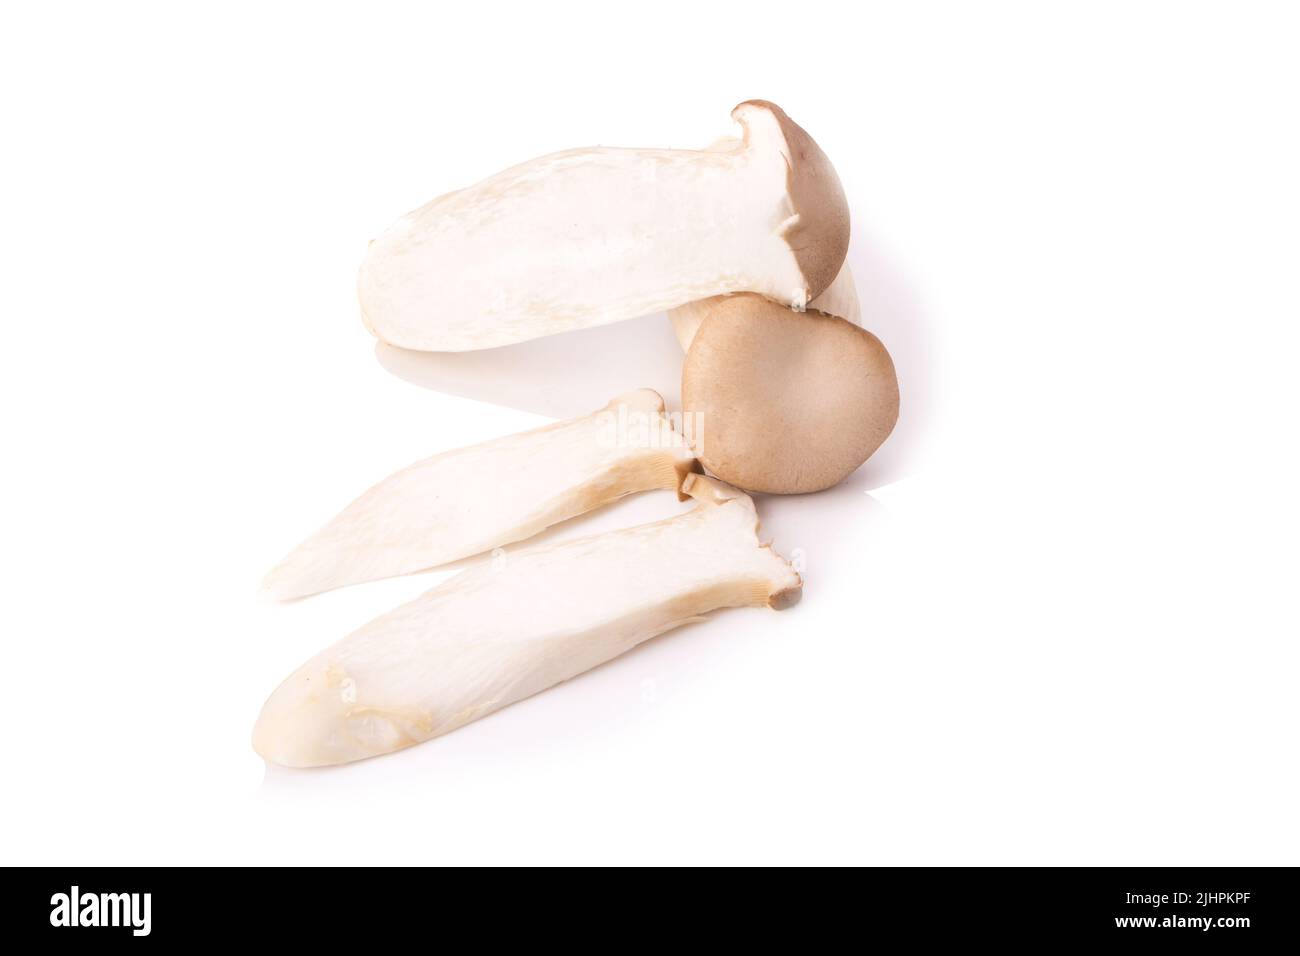 King Oyster mushroom (Eringi) on white backgroud. Stock Photo